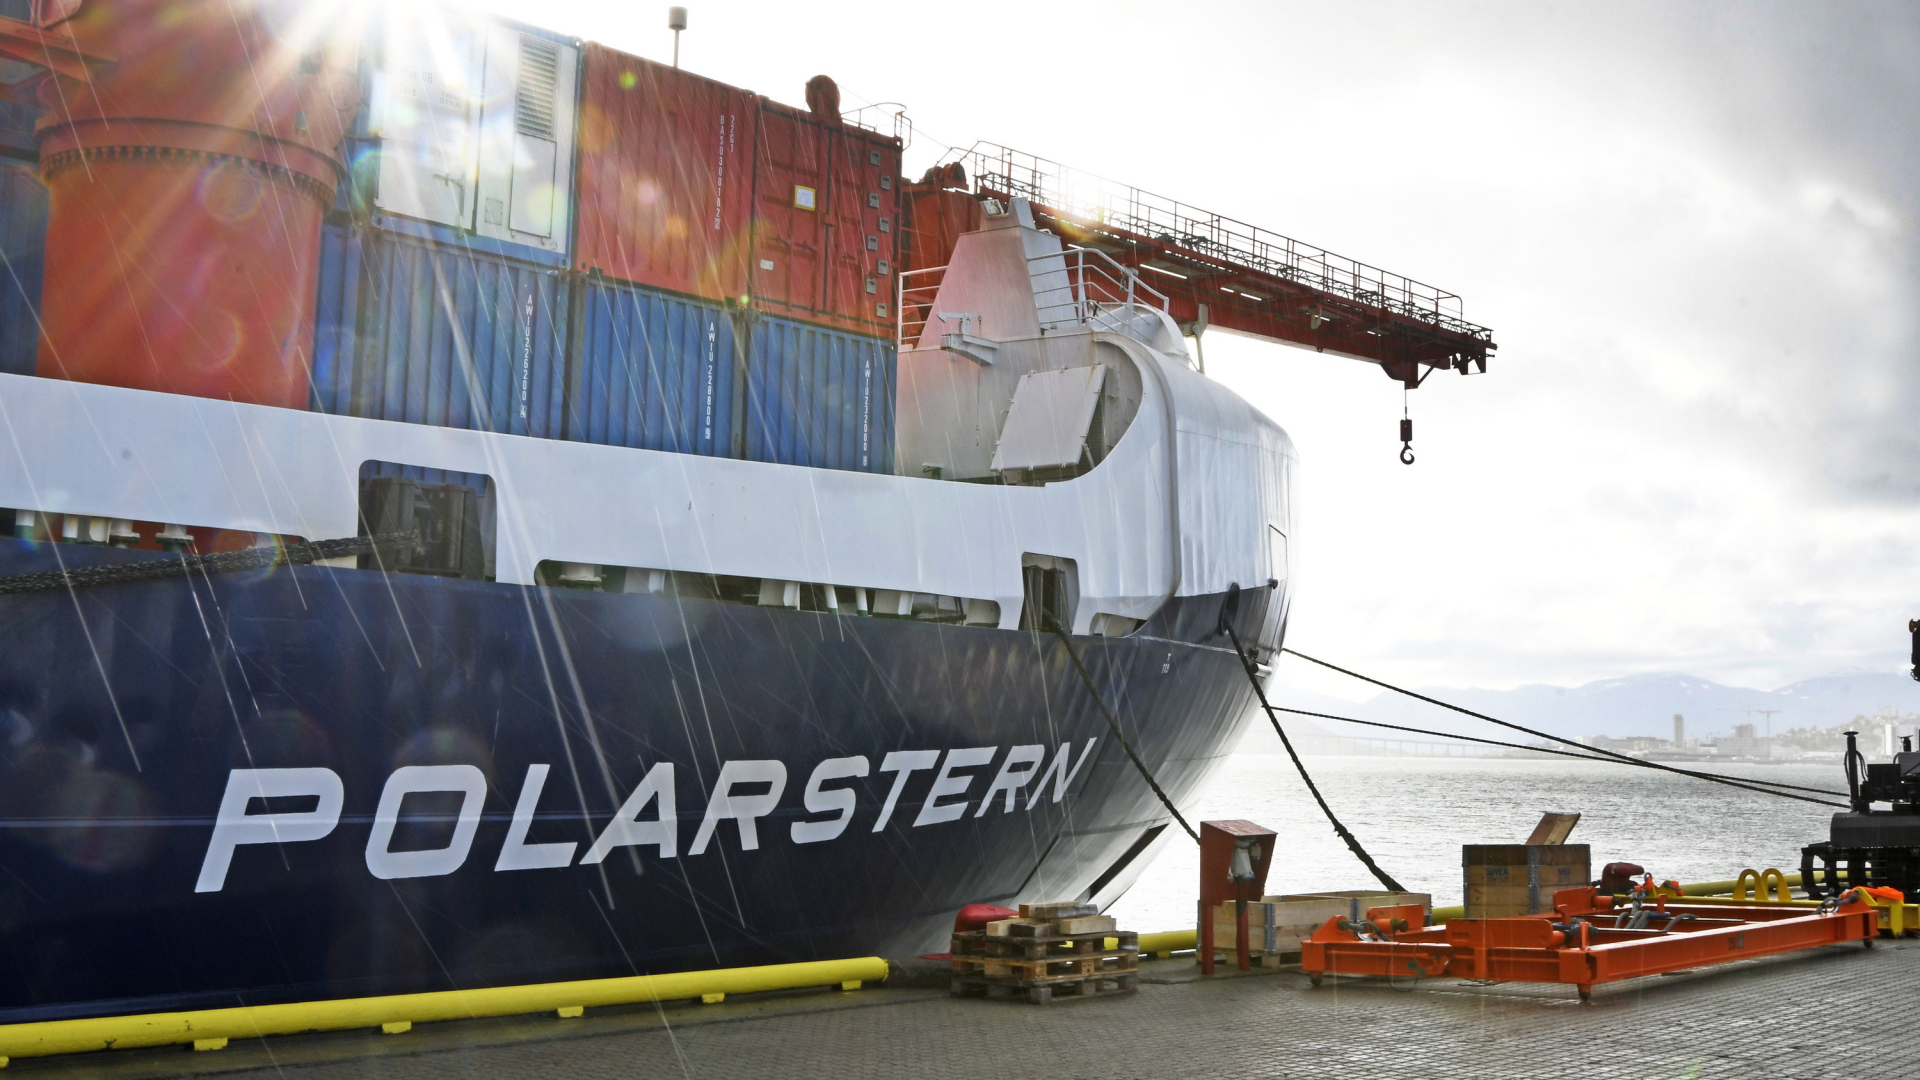  Das Forschungsschiff "Polarstern"  | Stichler/NDR